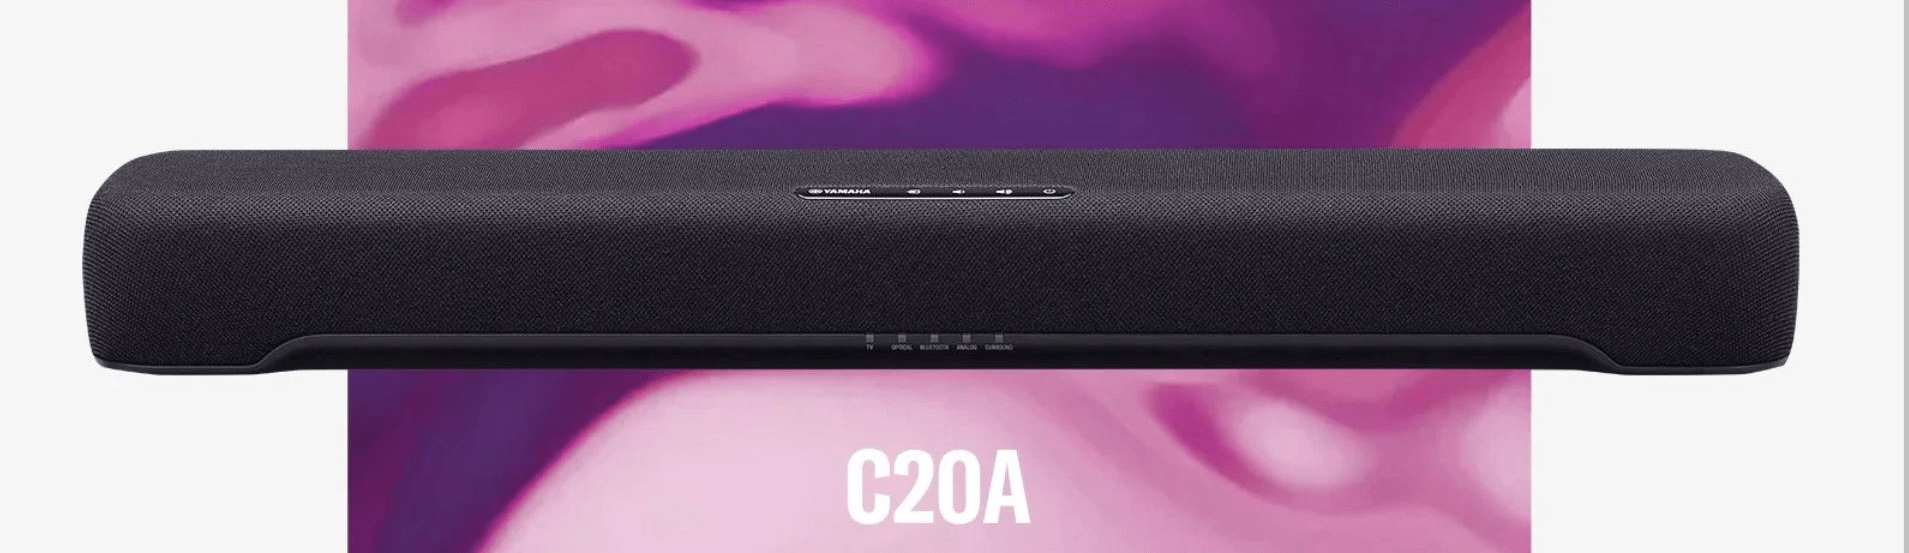 moderní kompaktní elegantní soundbar yamaha sr-c20a výkon 100 w hdmi s arc cec dolby audio  Bluetooth 5.0 herní režim ovládání z aplikace dálkové ovládání clear voice režim